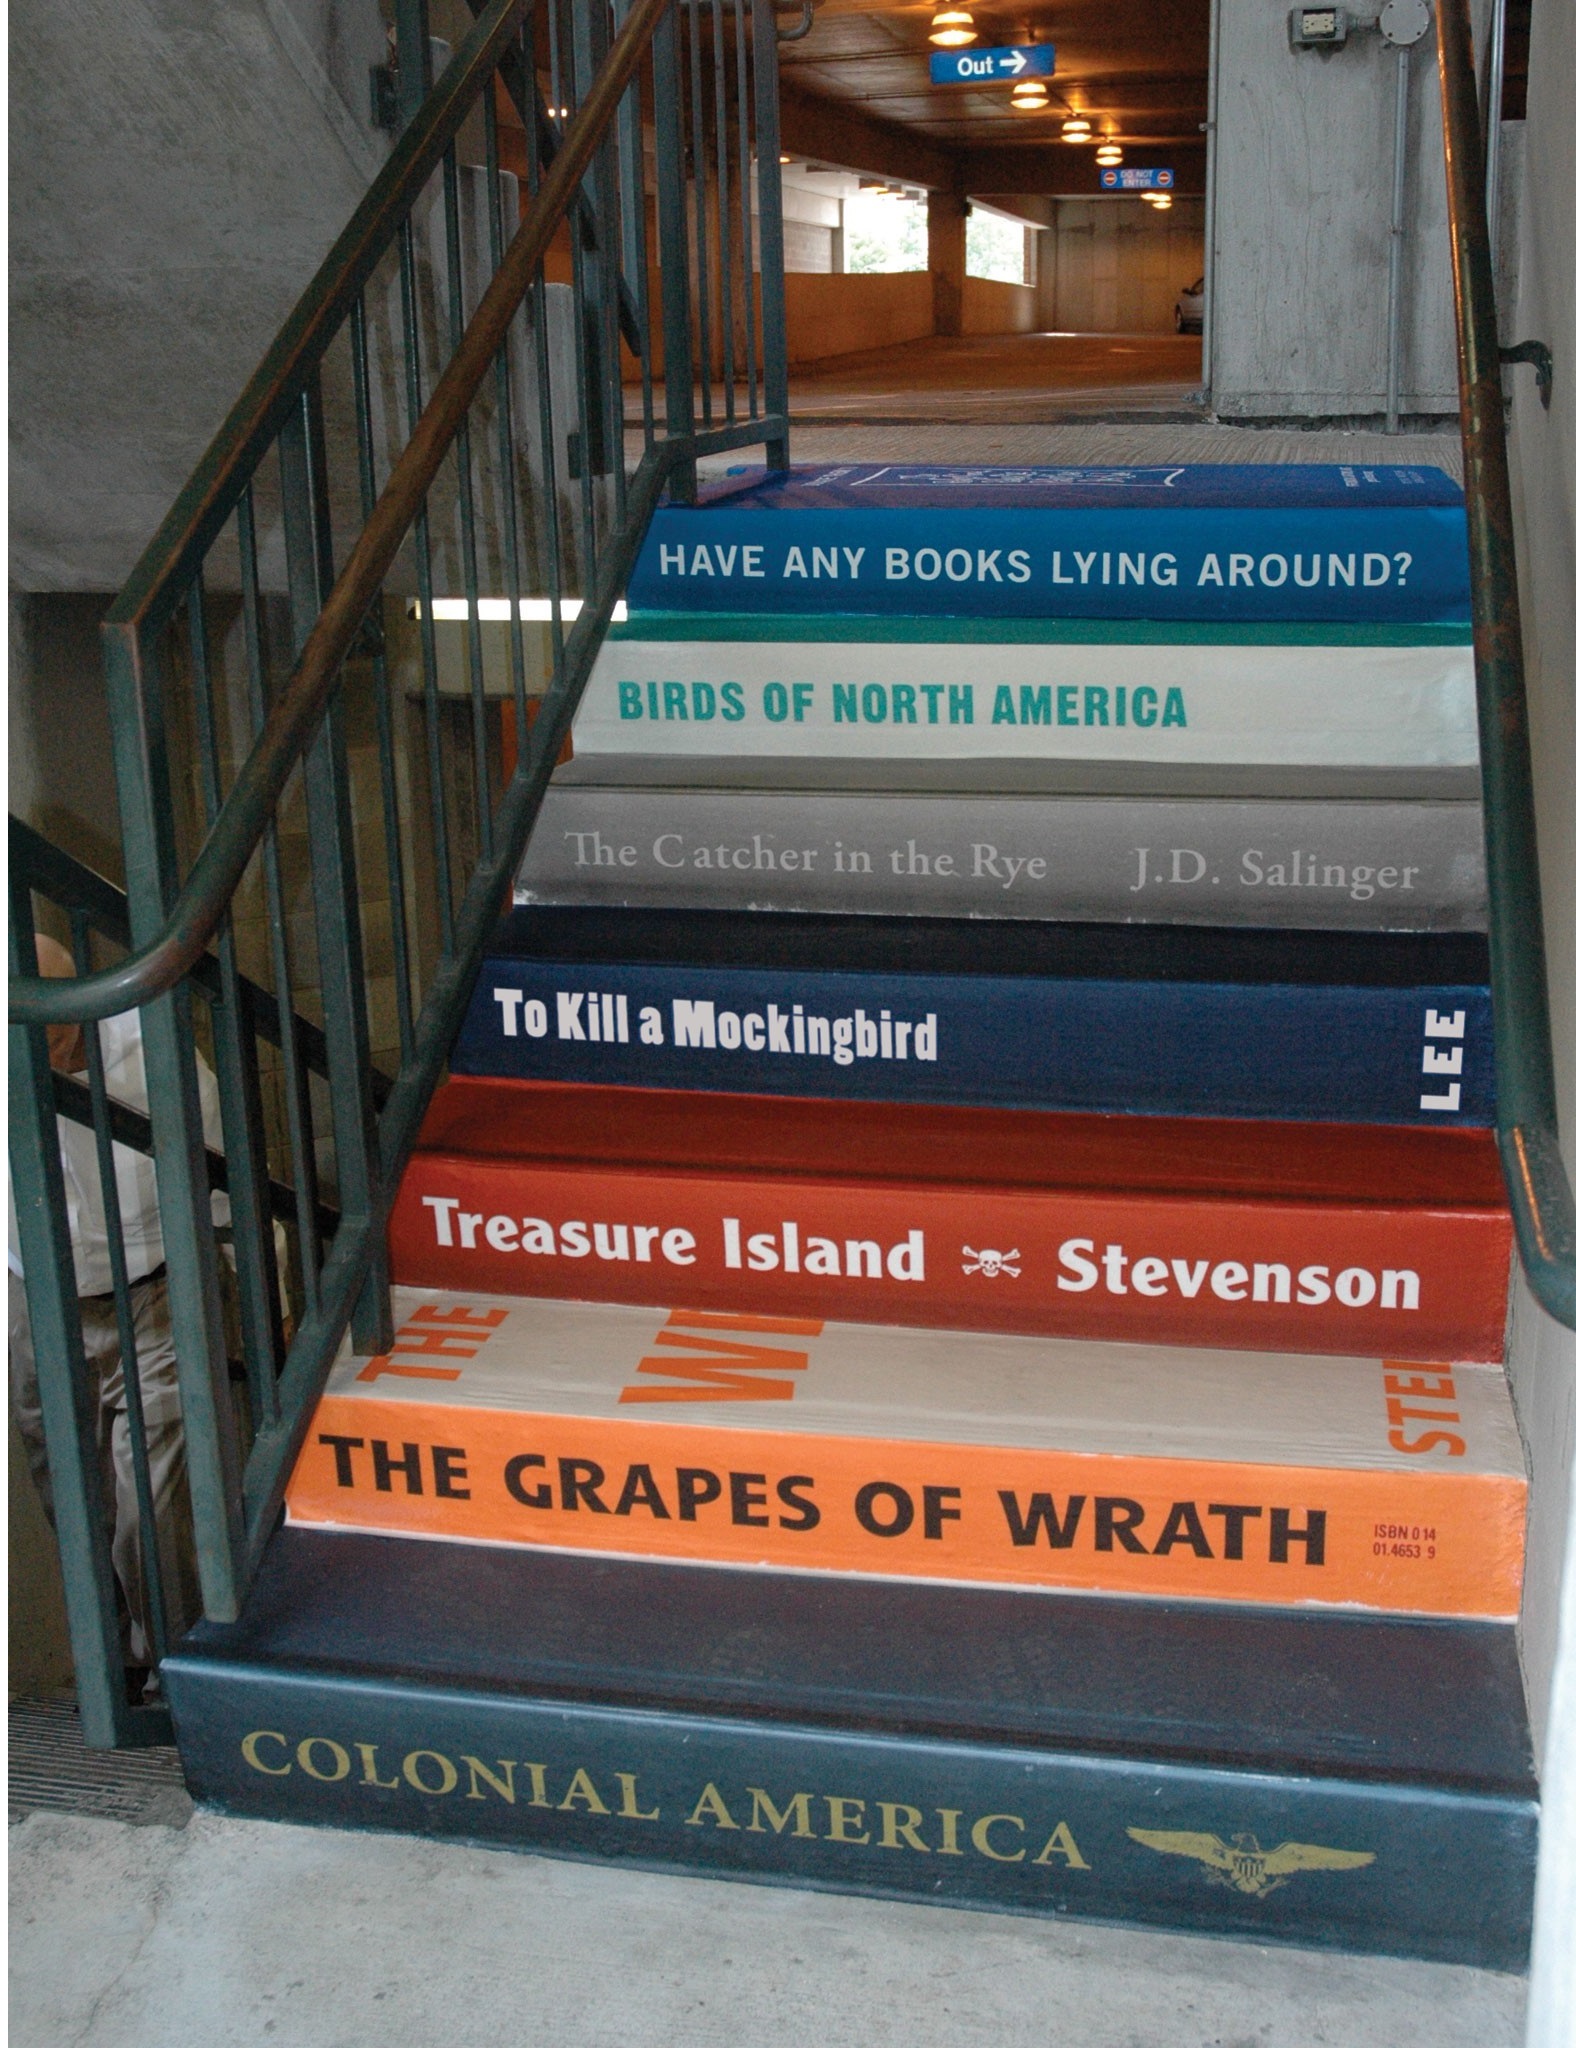 Или сделать домашнюю лестницу в книжной тематике или частью библиотеки